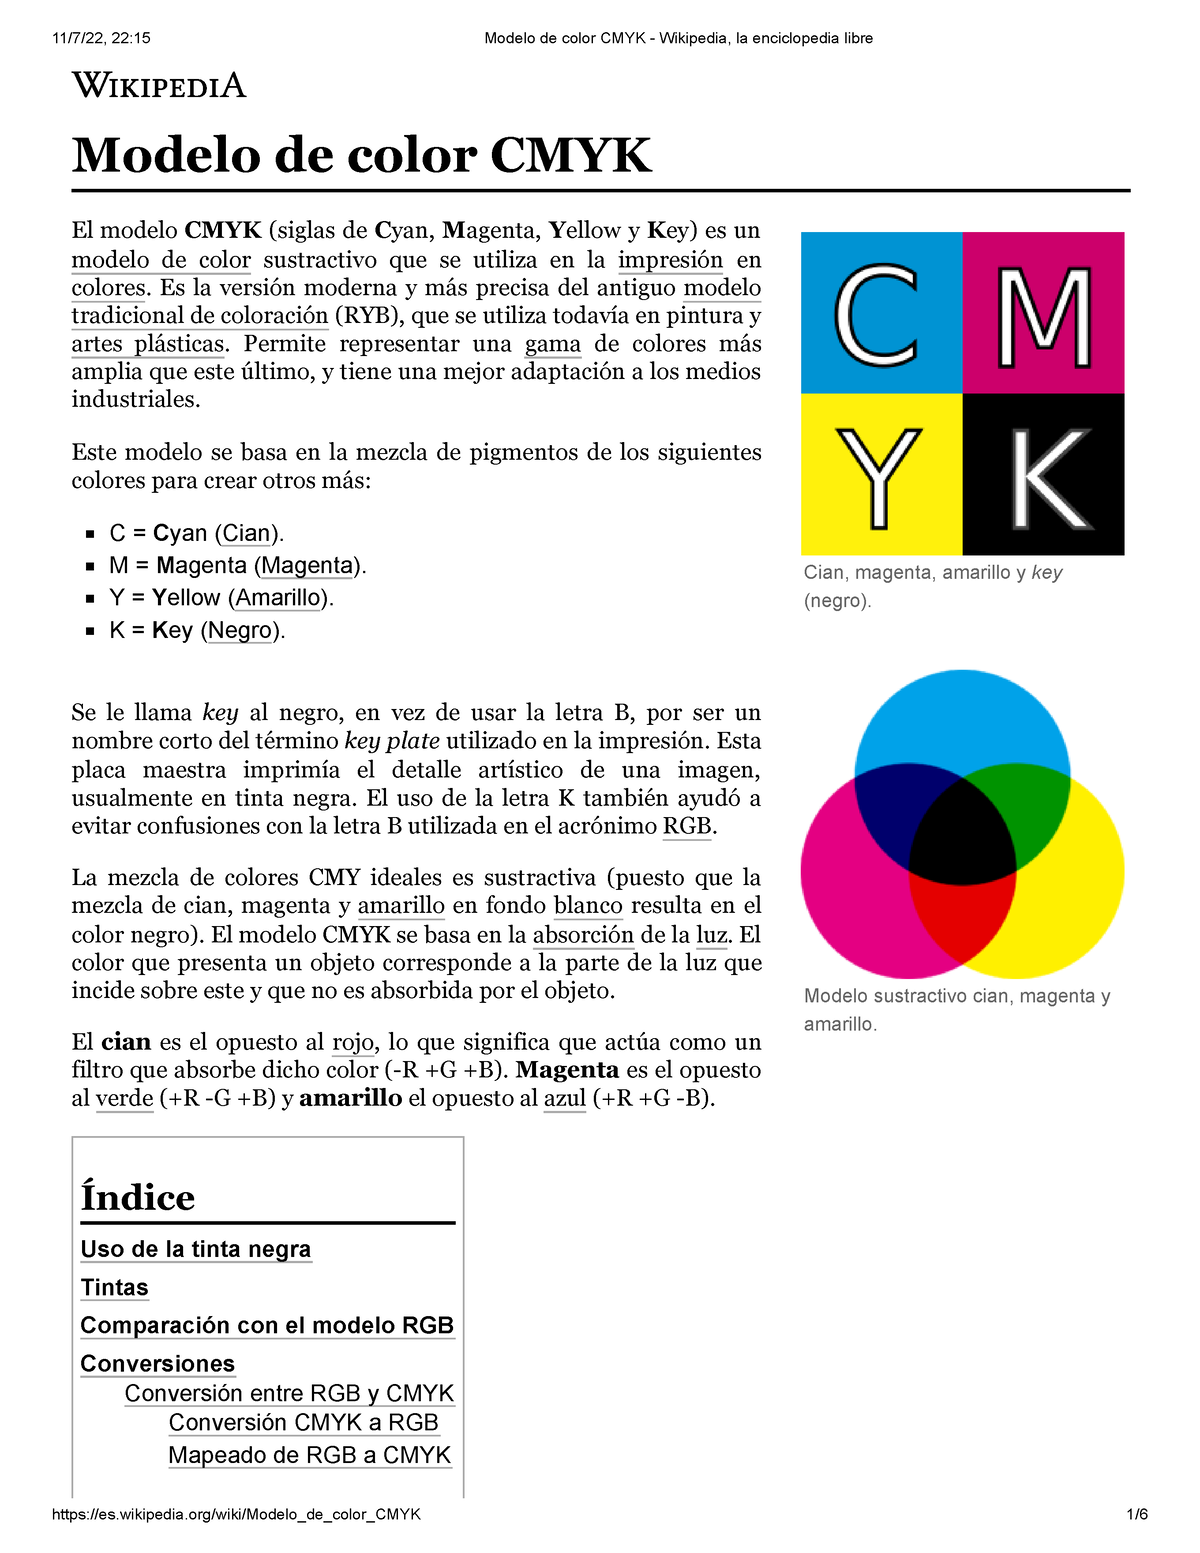 Modelo de color CMYK - Wikipedia, la enciclopedia libre - Cian, magenta,  amarillo y key (negro). - Studocu